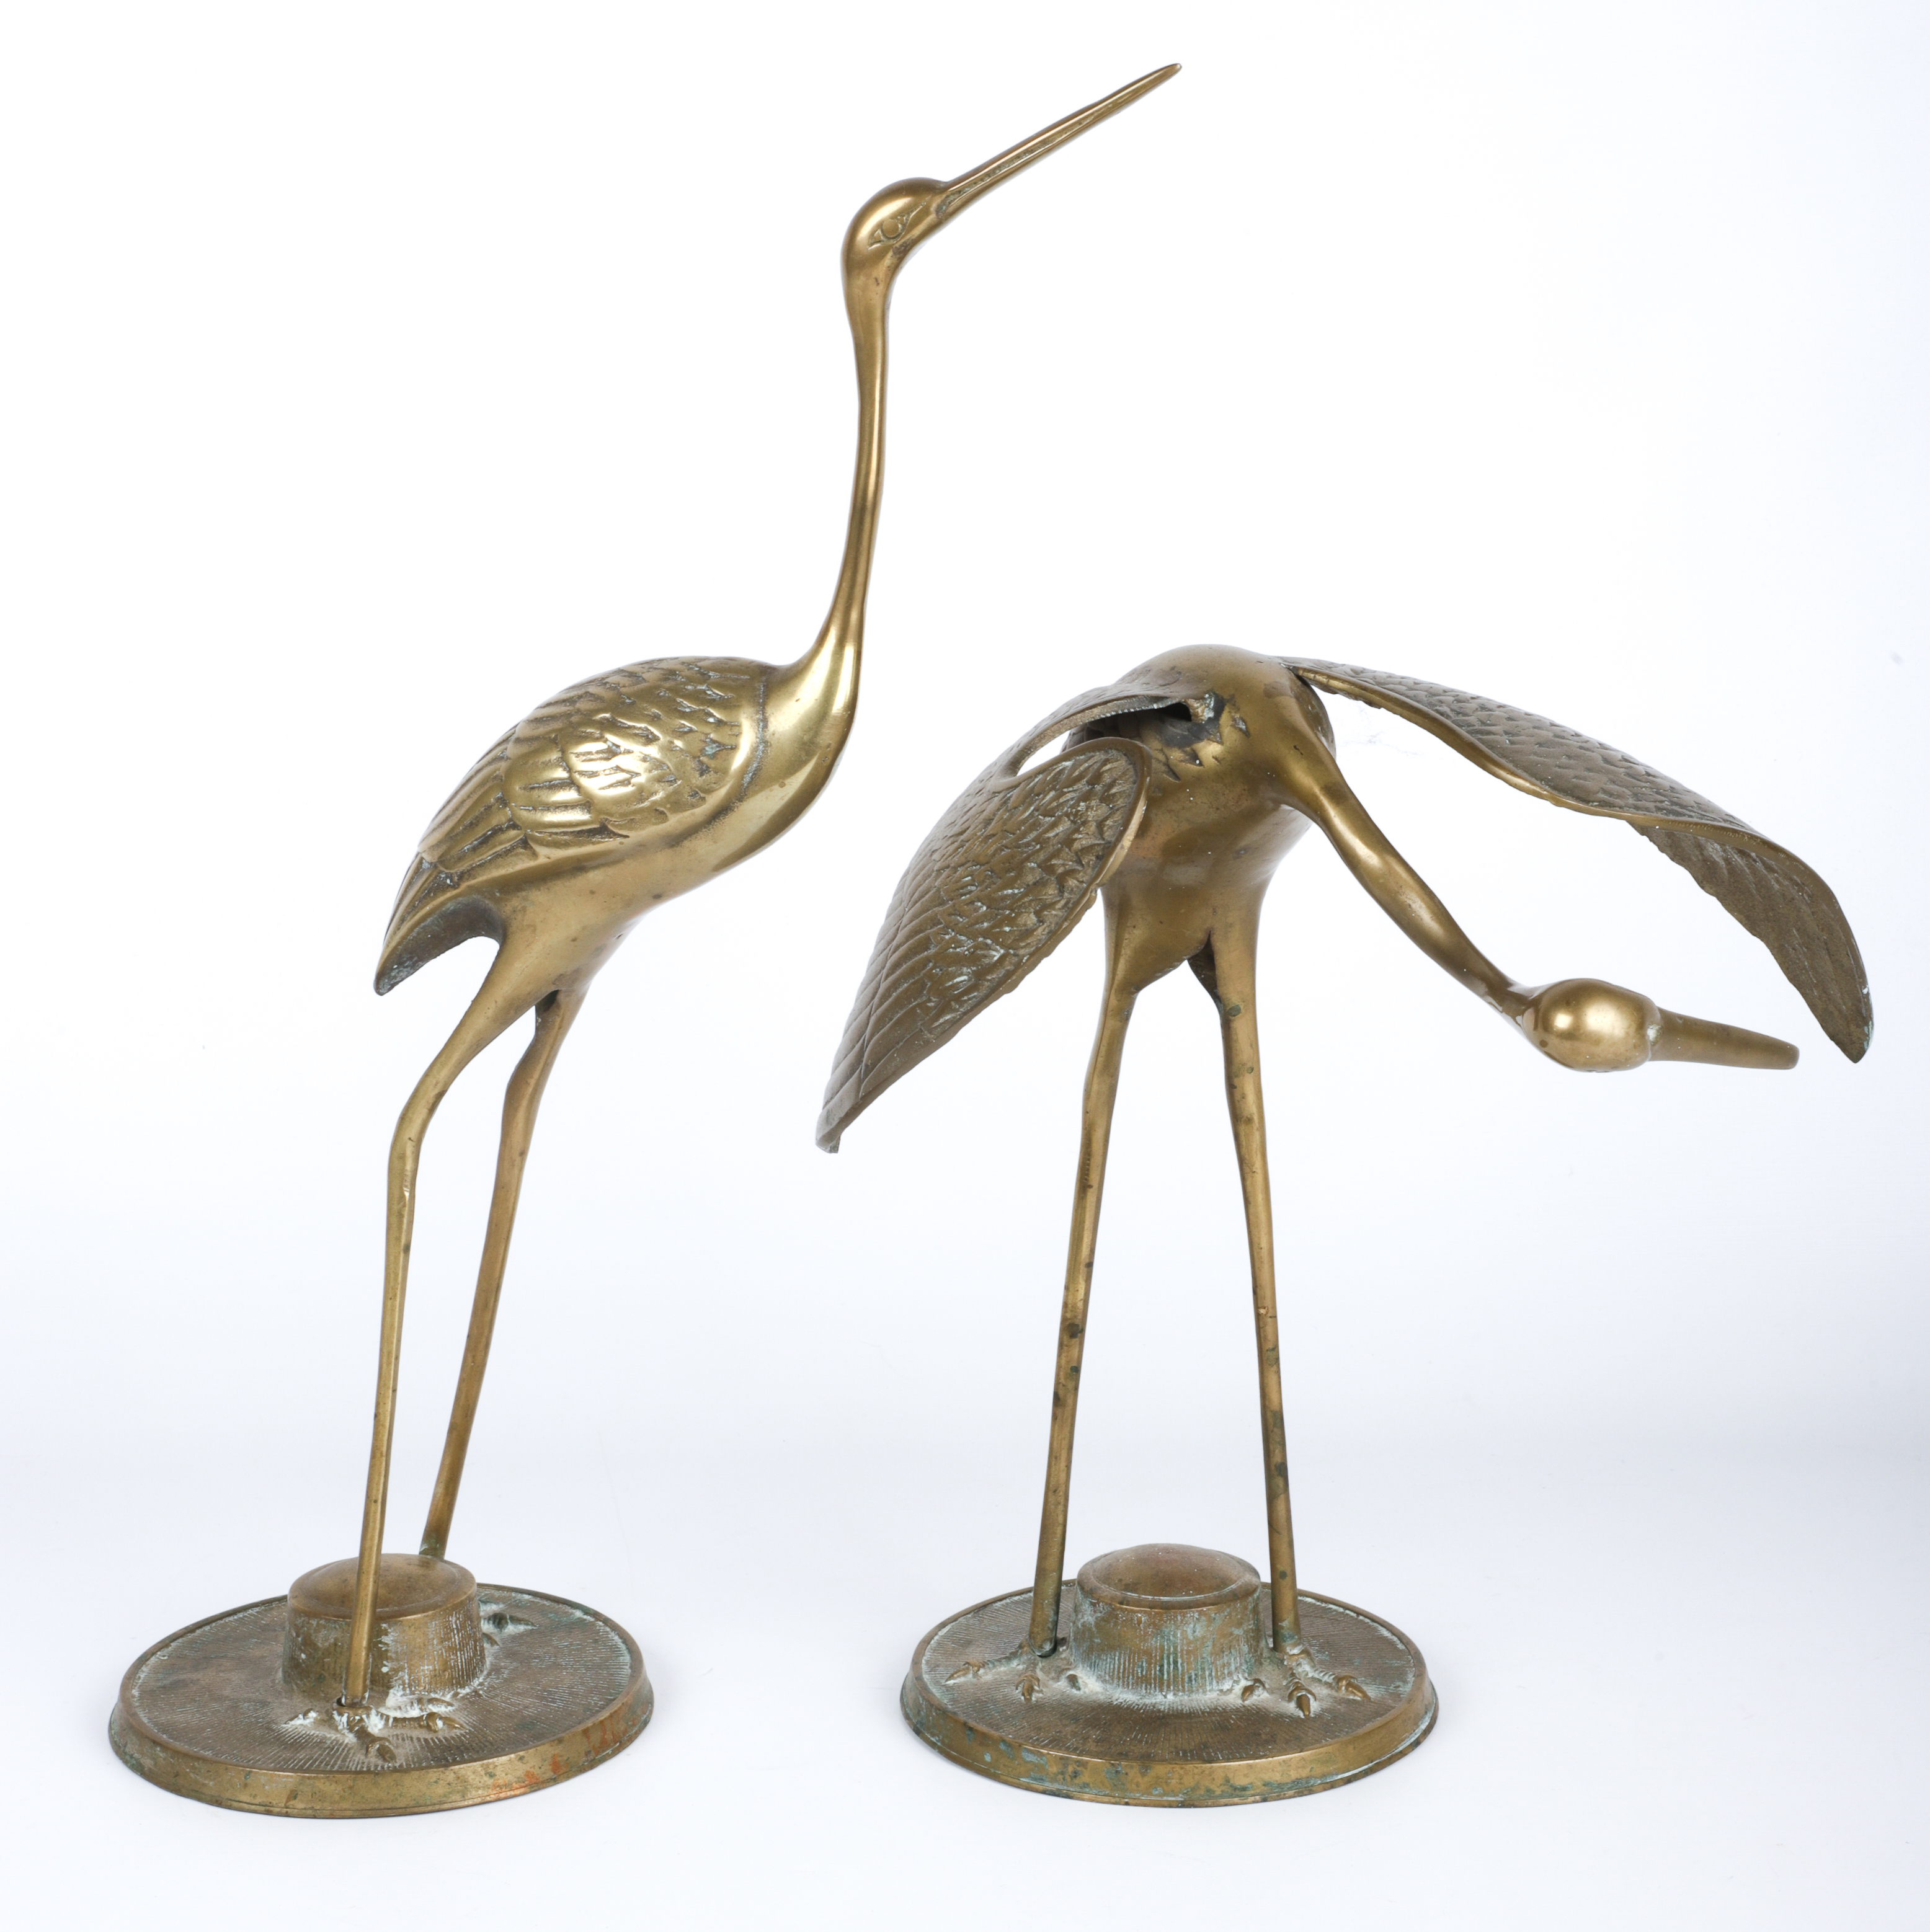  2 Brass crane figures tallest 3ca8b5